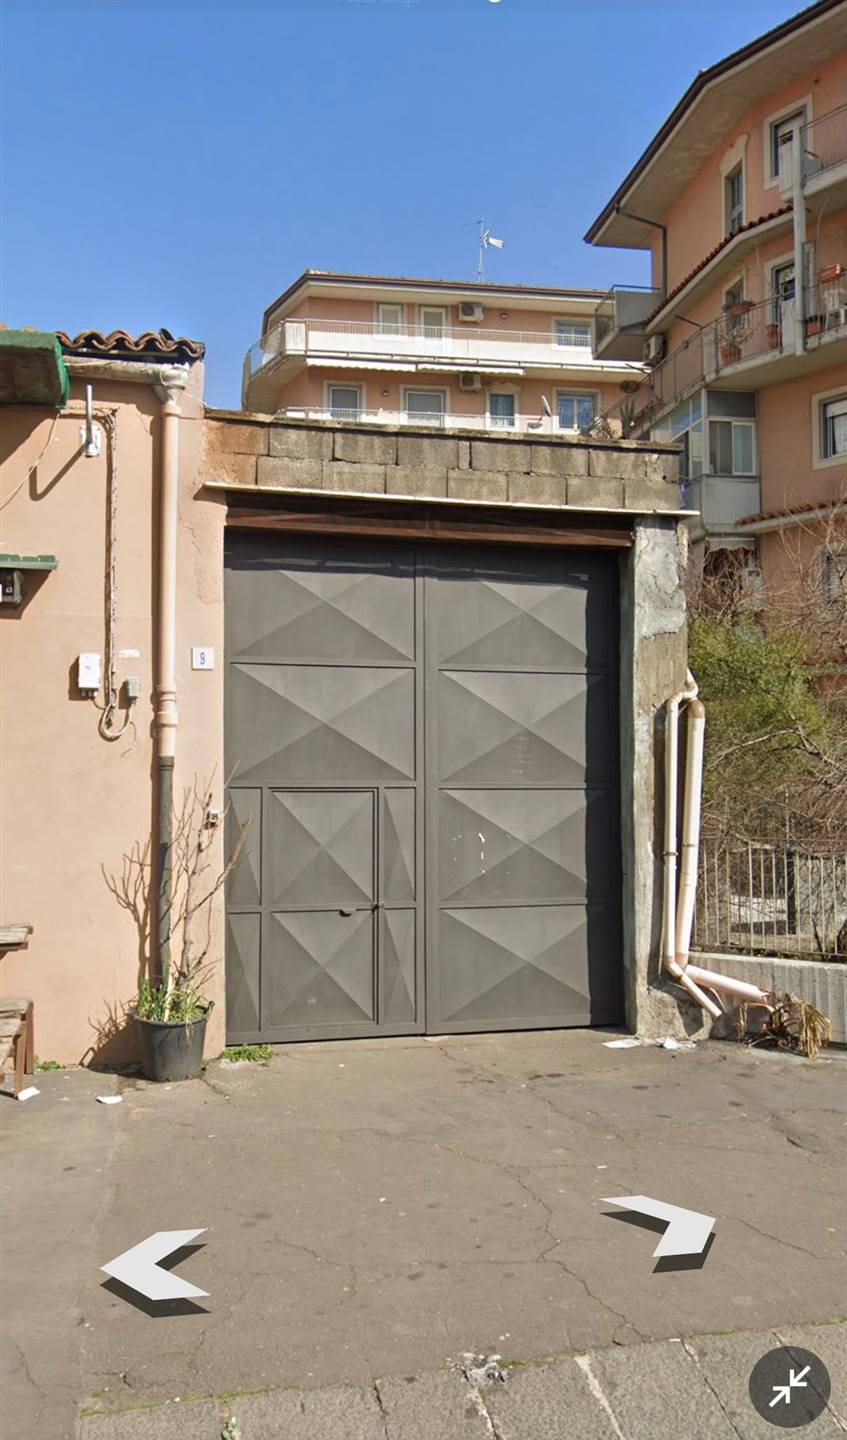 Magazzino in vendita a Catania, 4 locali, zona Località: PIAZZA RISORGIMENTO / MEDAGLIE D'ORO, prezzo € 178.000 | PortaleAgenzieImmobiliari.it